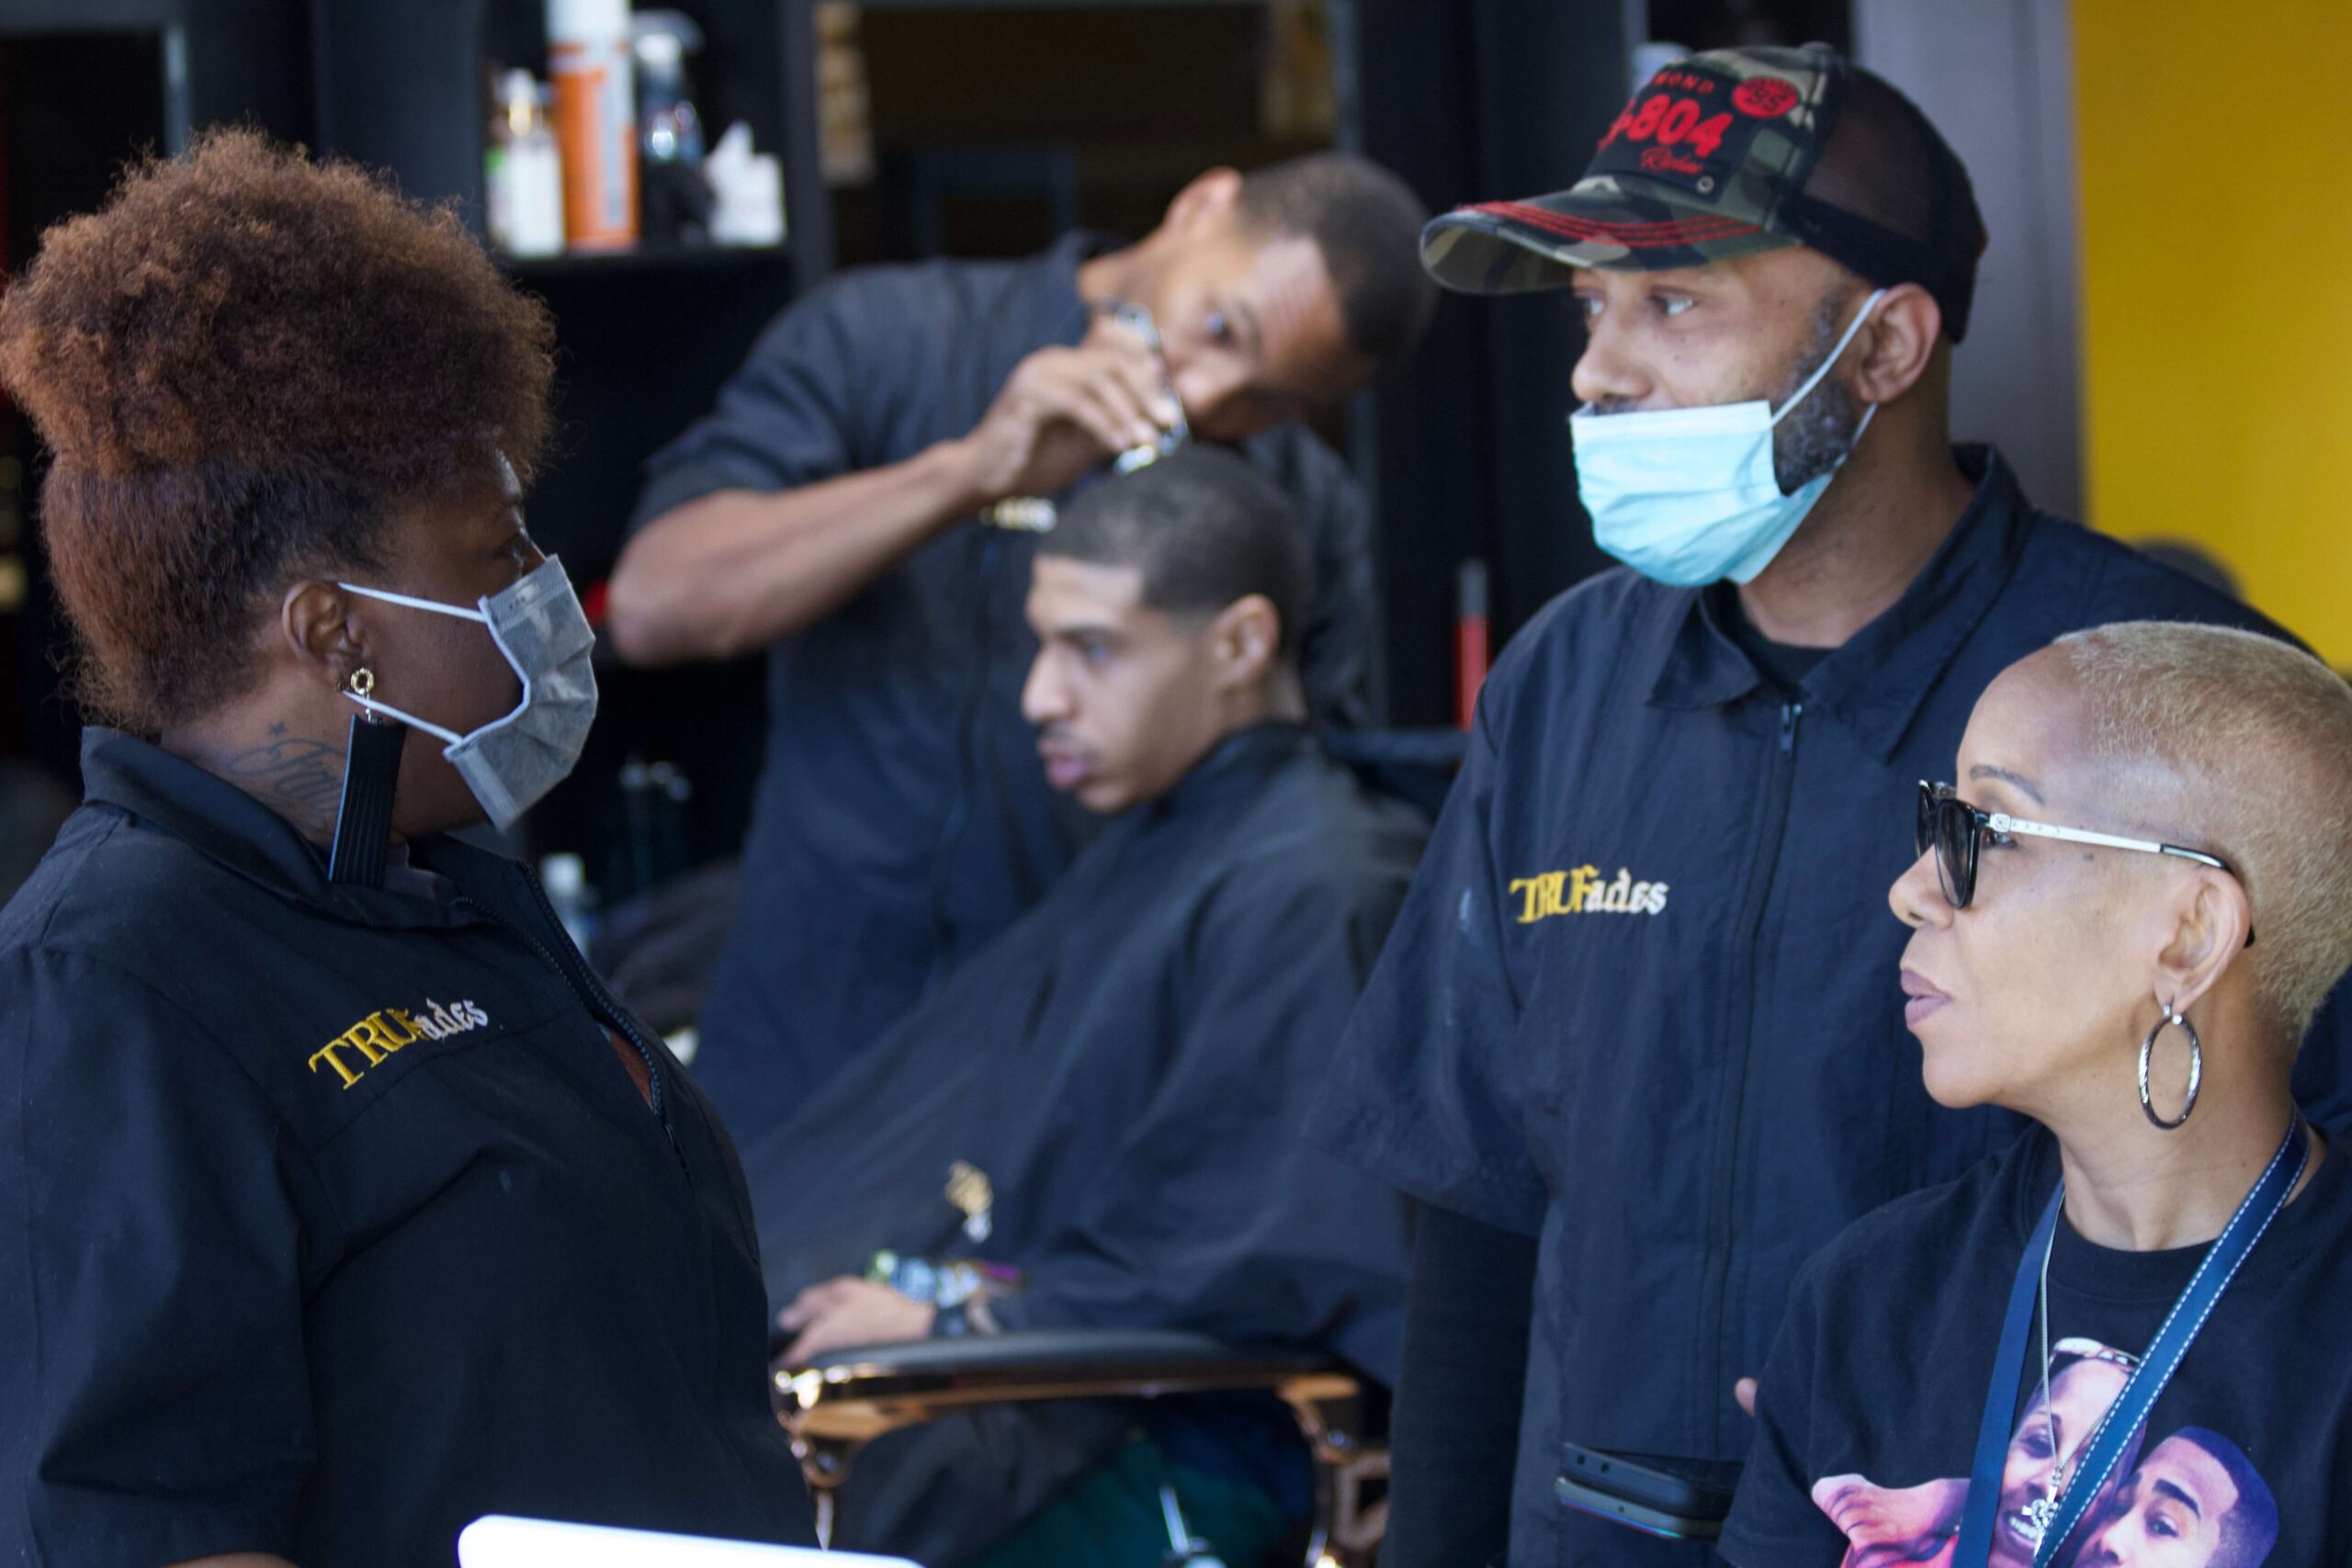 Staff at TruFades Barbershop in Richmond, VA